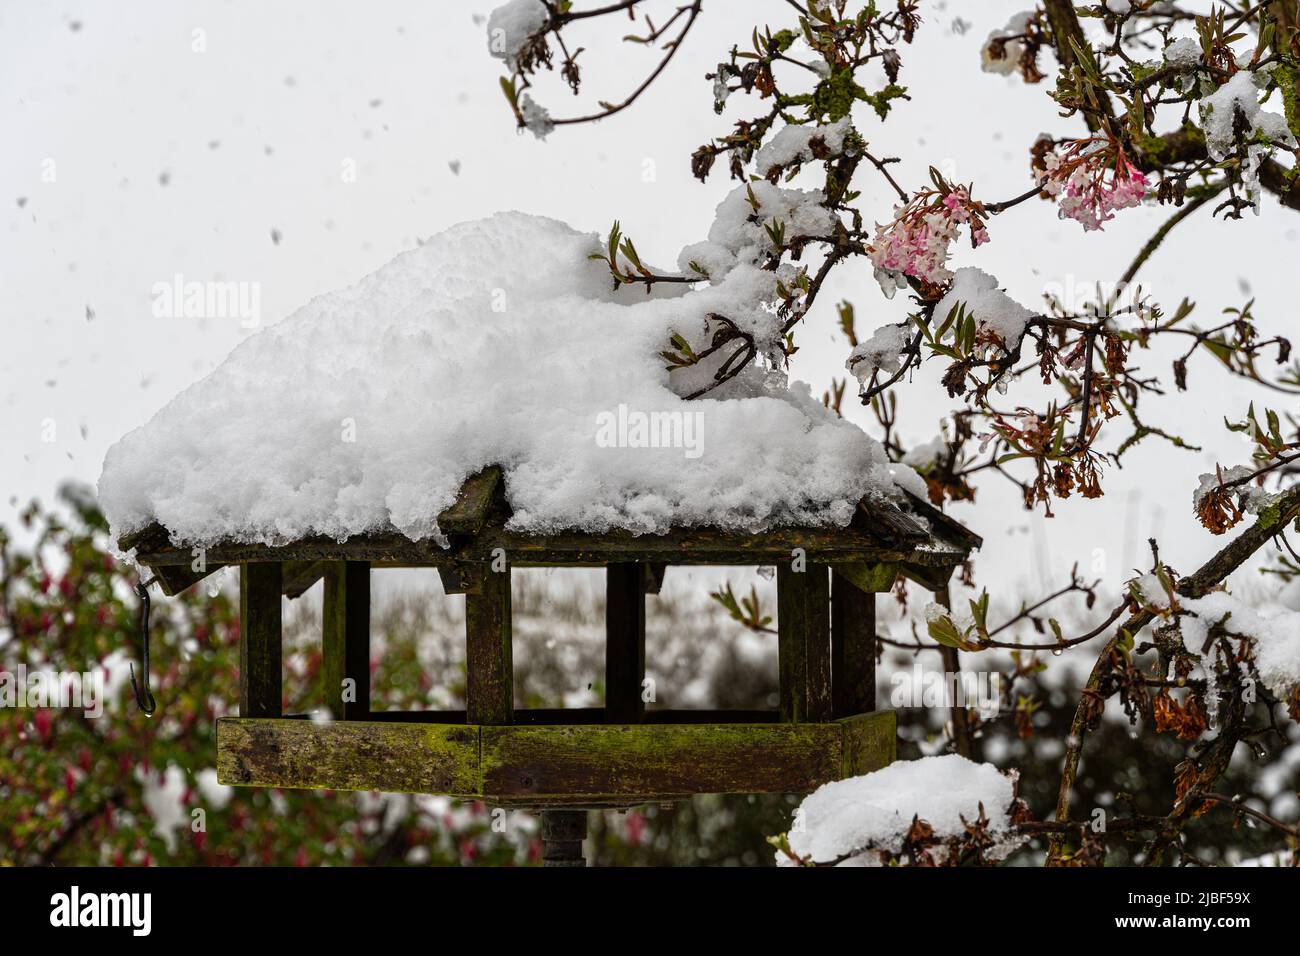 Birdhouse sotto un'improvvisa nevicata primaverile con albero fiorito. Assens, Danimarca, Europa Foto Stock